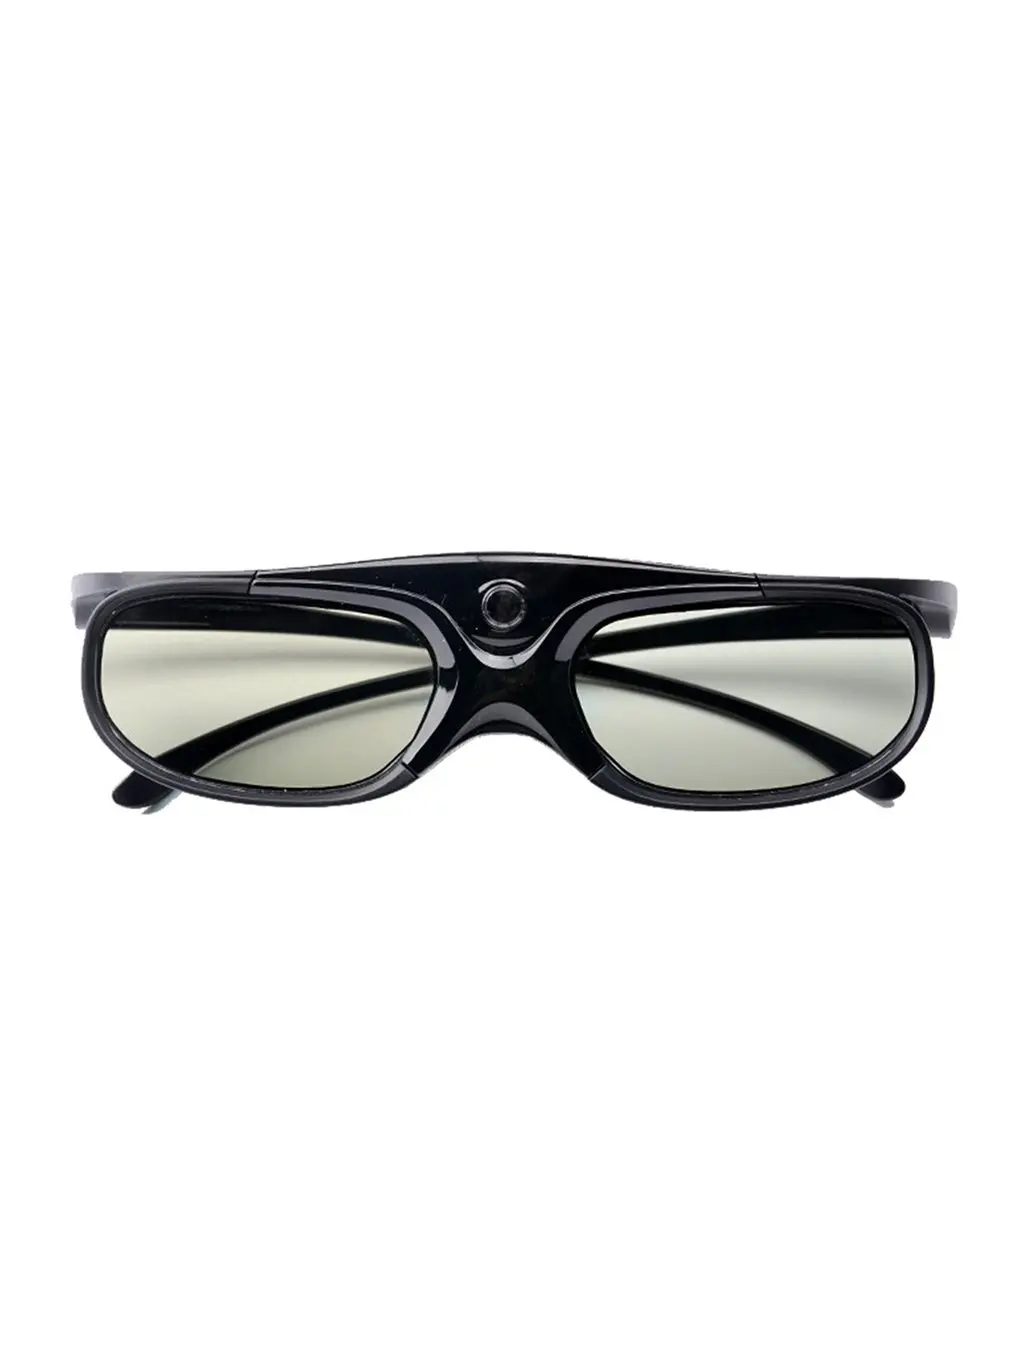 1/2Pcs DLP Link 3D Glasses Active Shutter 96-144HZ Eyewear Rechargeable Glasses Circular Glasses For DLP 3D Projectors 